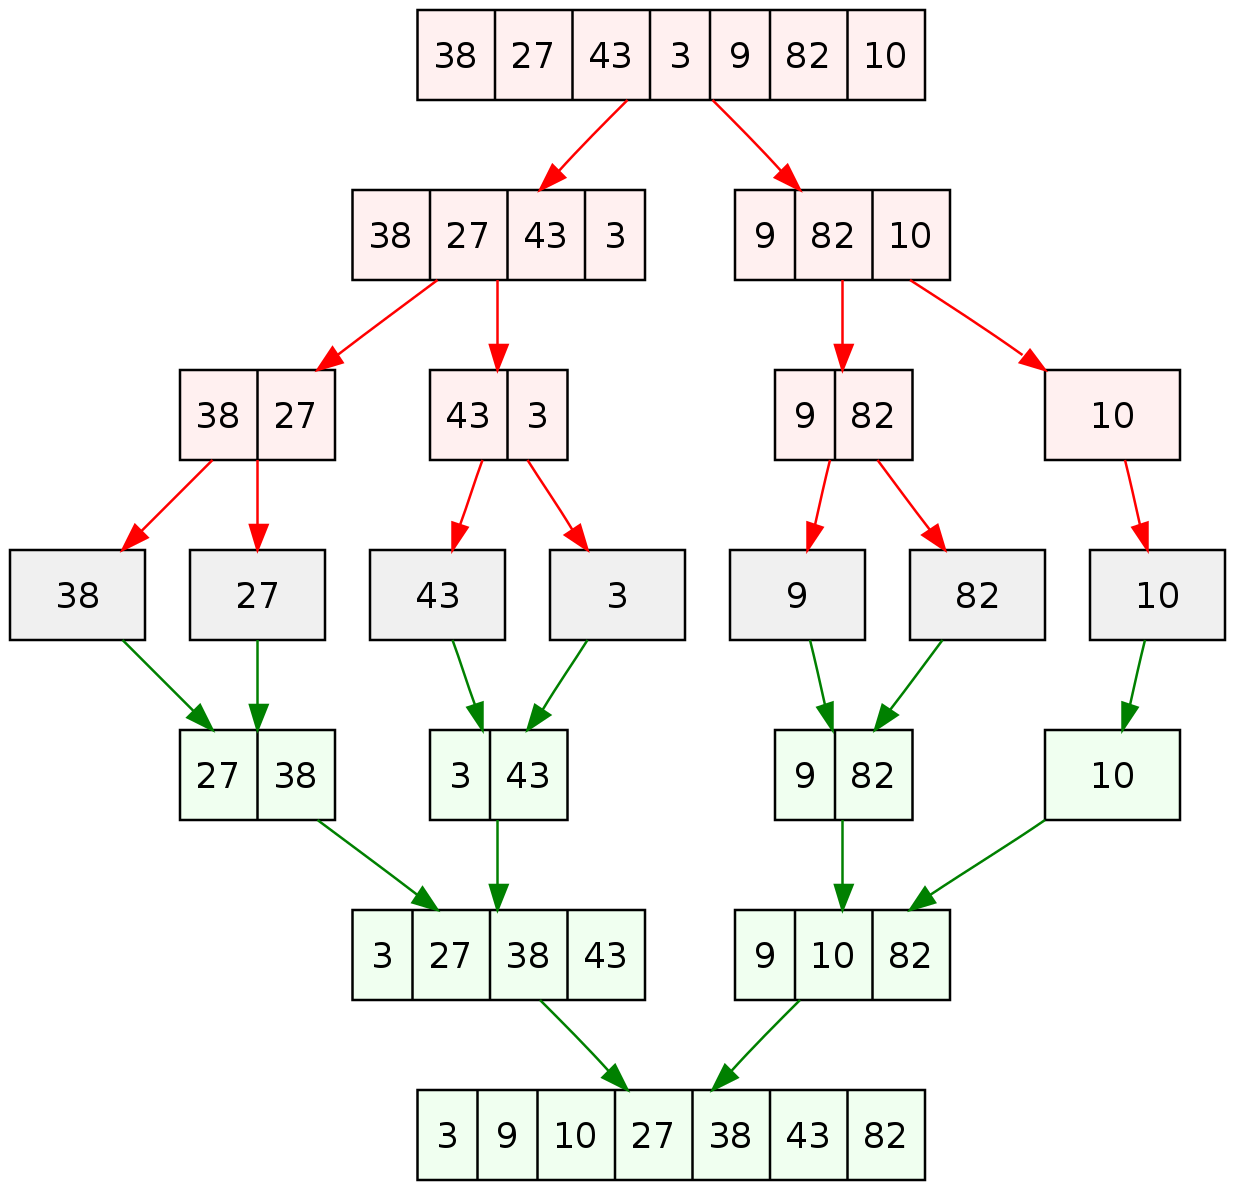 Merge_sort_algorithm_diagram